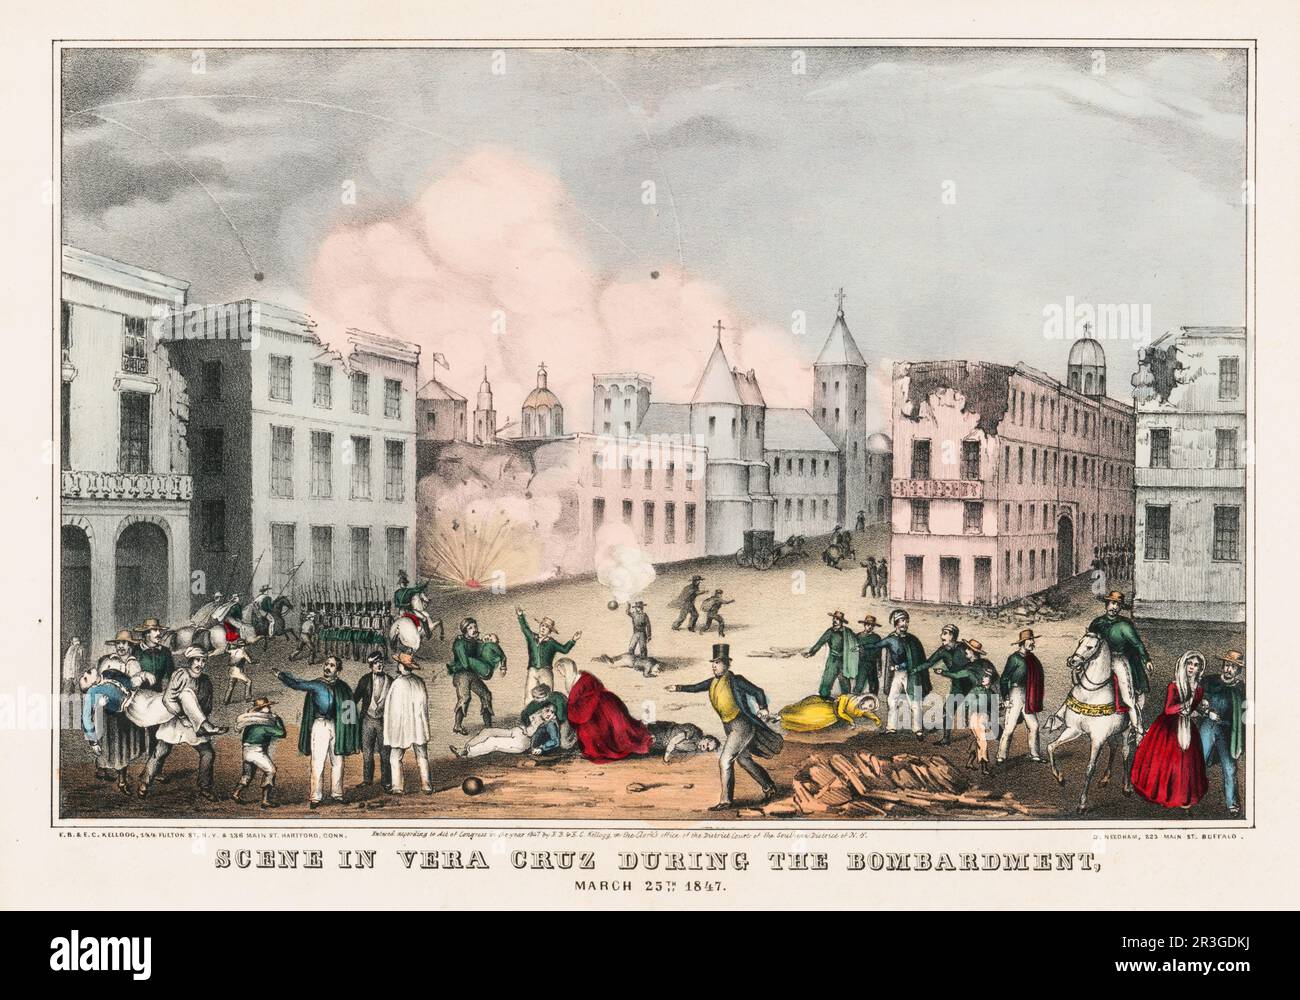 25. März 1847 - Szene in Veracruz, Mexiko während des mexikanischen Amerikanischen Krieges. Stockfoto